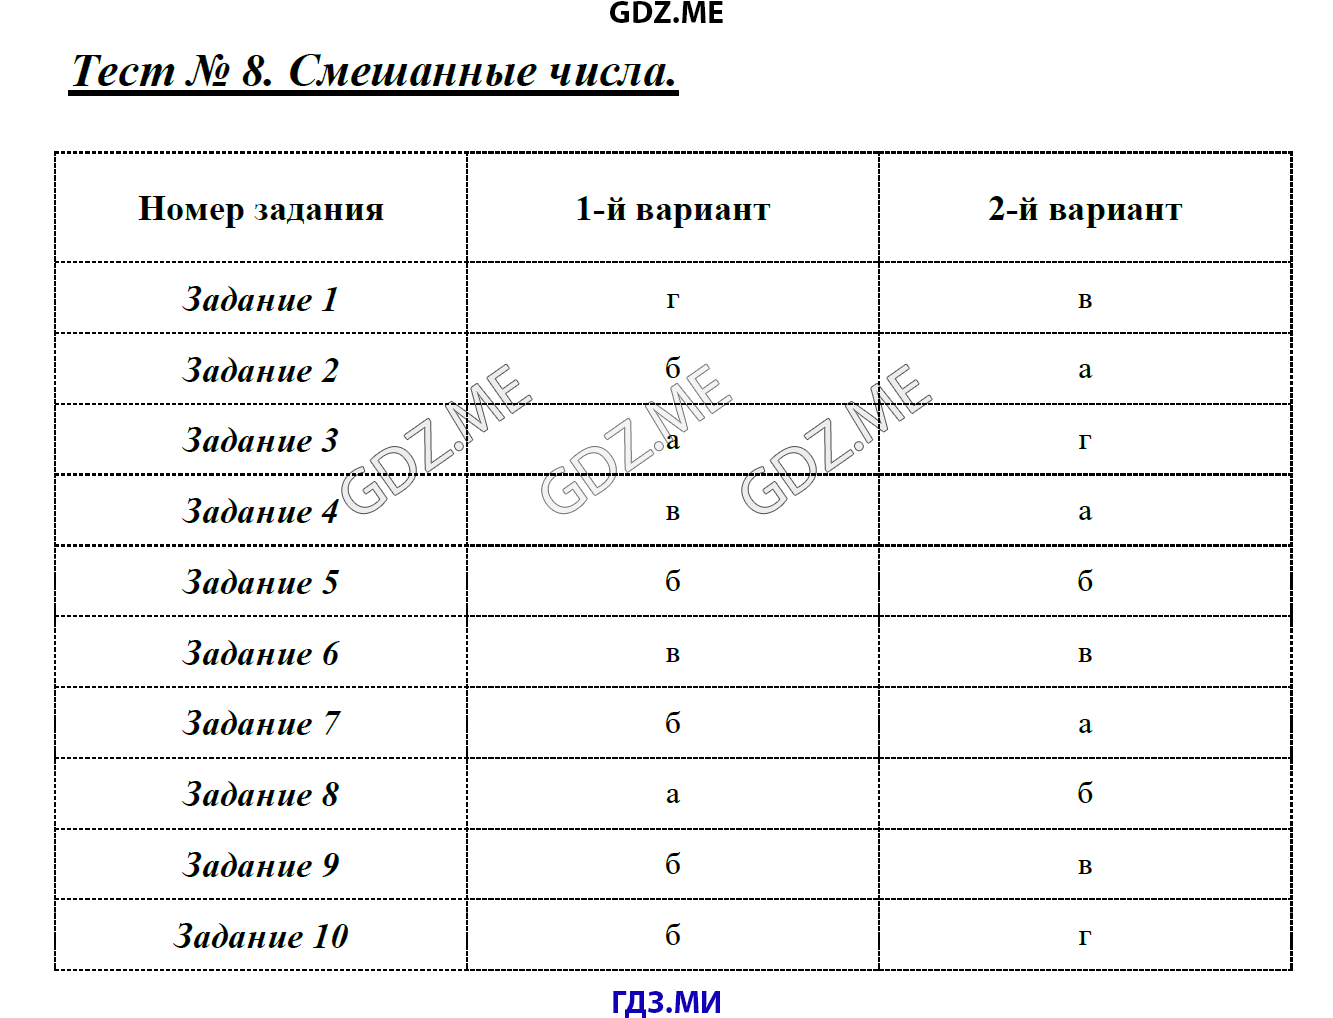 Поляков тесты 8 класс